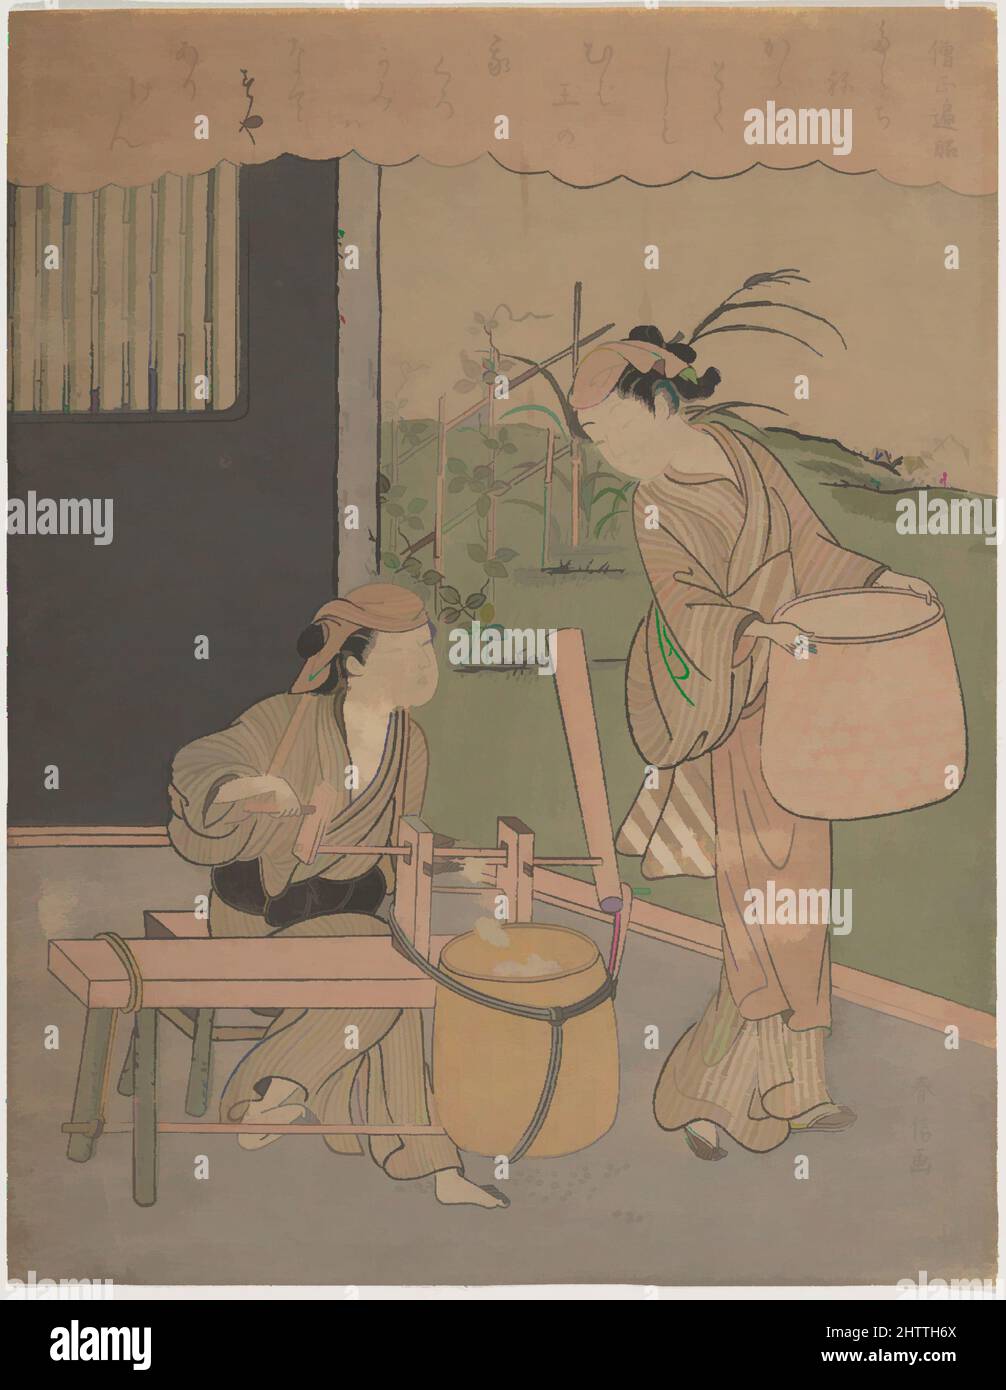 Arte ispirata al poema di Henjō Sojō, 百人一首 僧正遍昭, periodo Edo (1615-1868), ca. 1766, Giappone, stampa a blocchi di legno policromi; inchiostro e colore su carta, H. 10 9/16" (26,8 cm); W. 8 3/16" (20,8 cm), stampe, Suzuki Harunobu (giapponese, 1725–1770), questa impressione di una stampa comunemente conosciuta come ', opere classiche modernizzate da Artotop con un tuffo di modernità. Forme, colore e valore, impatto visivo accattivante sulle emozioni artistiche attraverso la libertà delle opere d'arte in modo contemporaneo. Un messaggio senza tempo che persegue una nuova direzione selvaggiamente creativa. Artisti che si rivolgono al supporto digitale e creano l'NFT Artotop Foto Stock